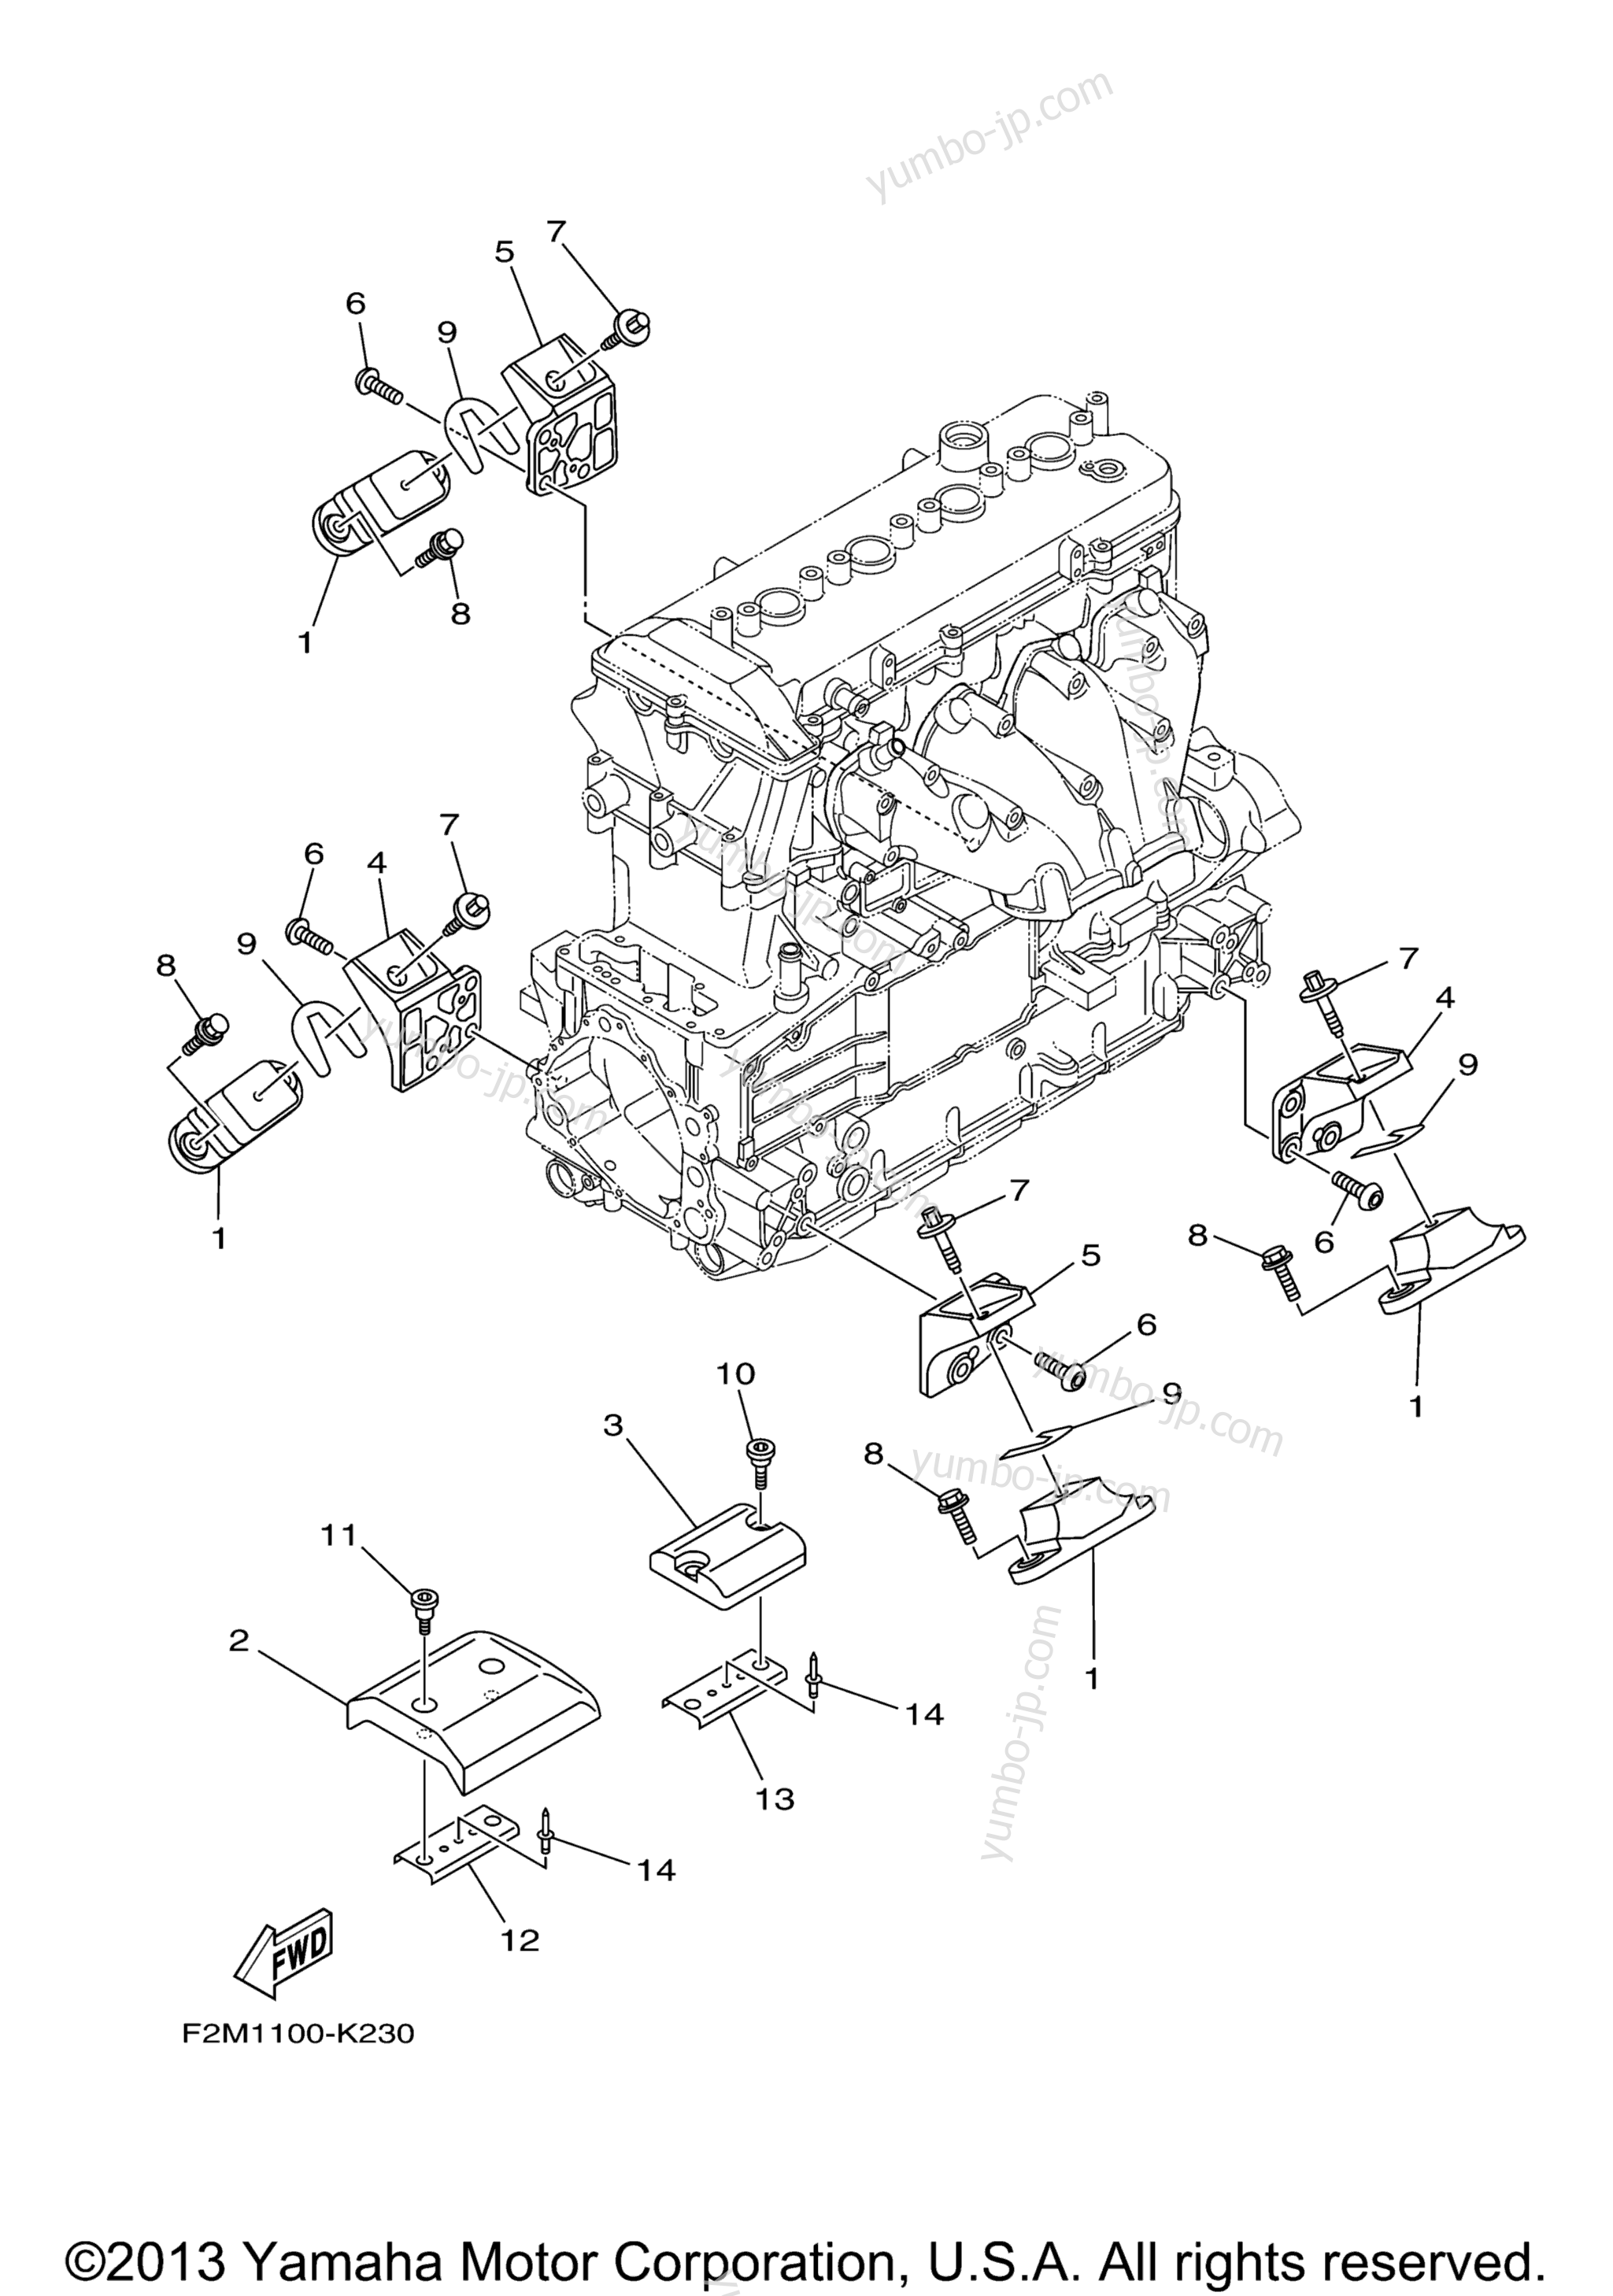 ENGINE MOUNT для гидроциклов YAMAHA VXR (VX1800AL) 2012 г.